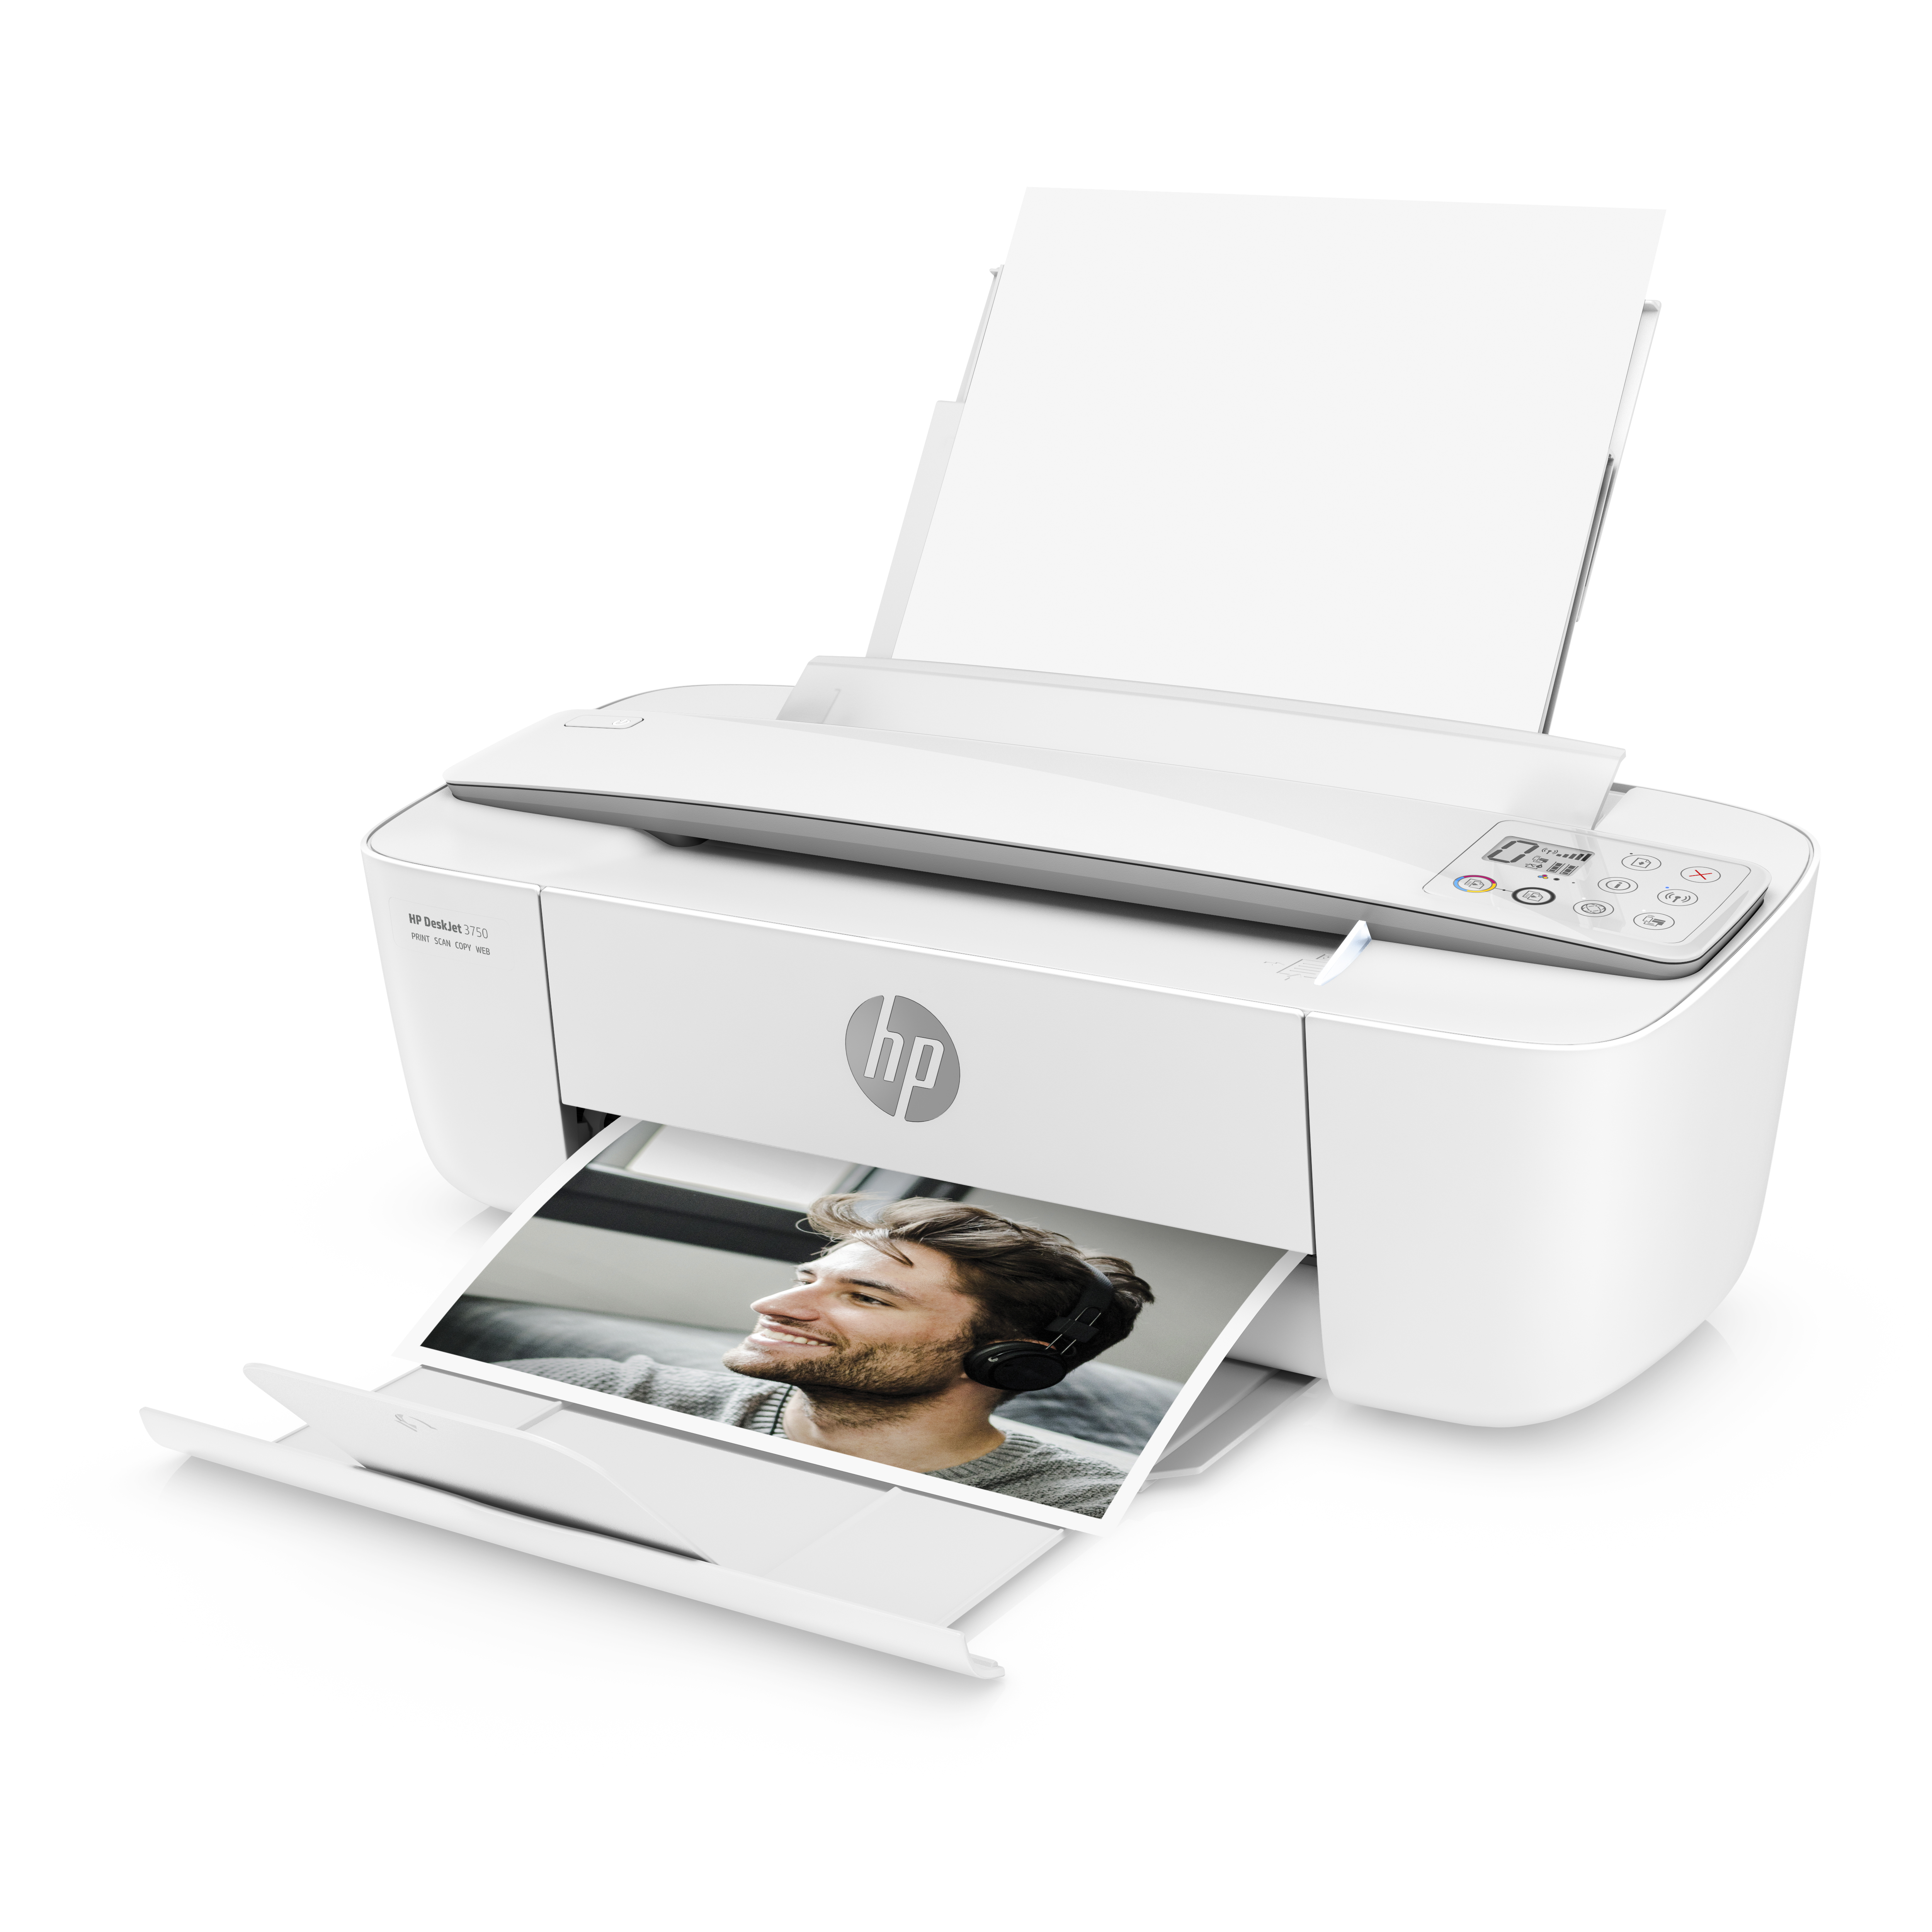 HP | Deskjet 3750 | Multifunktionsdrucker 3in1